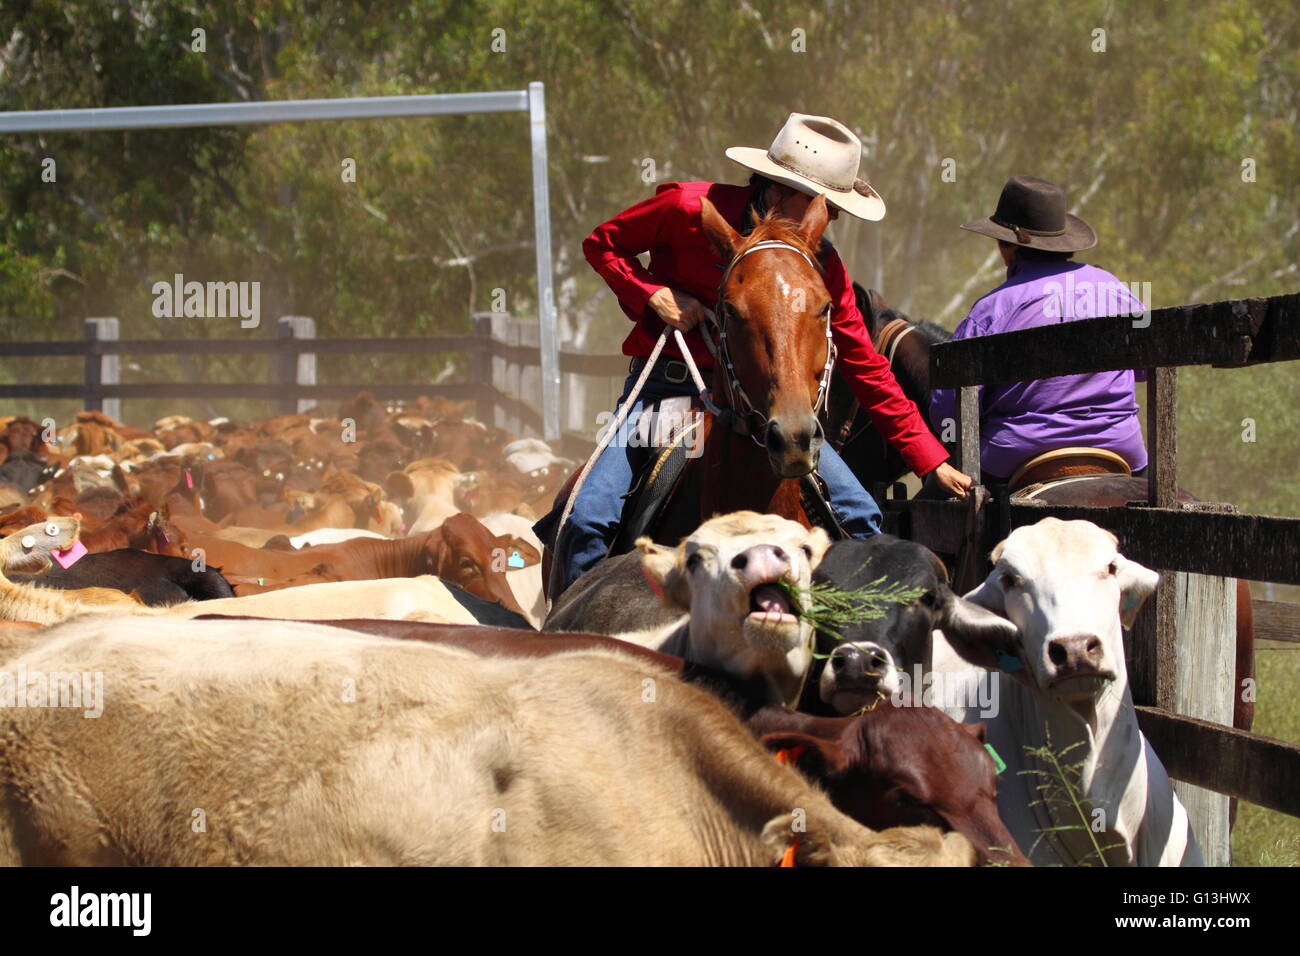 Eine Cowgirl in rotem Hemd und Cowboy-Hut und Reiten unter ein Mob von Rindern schließt das Tor zu Rindern Werften. Stockfoto